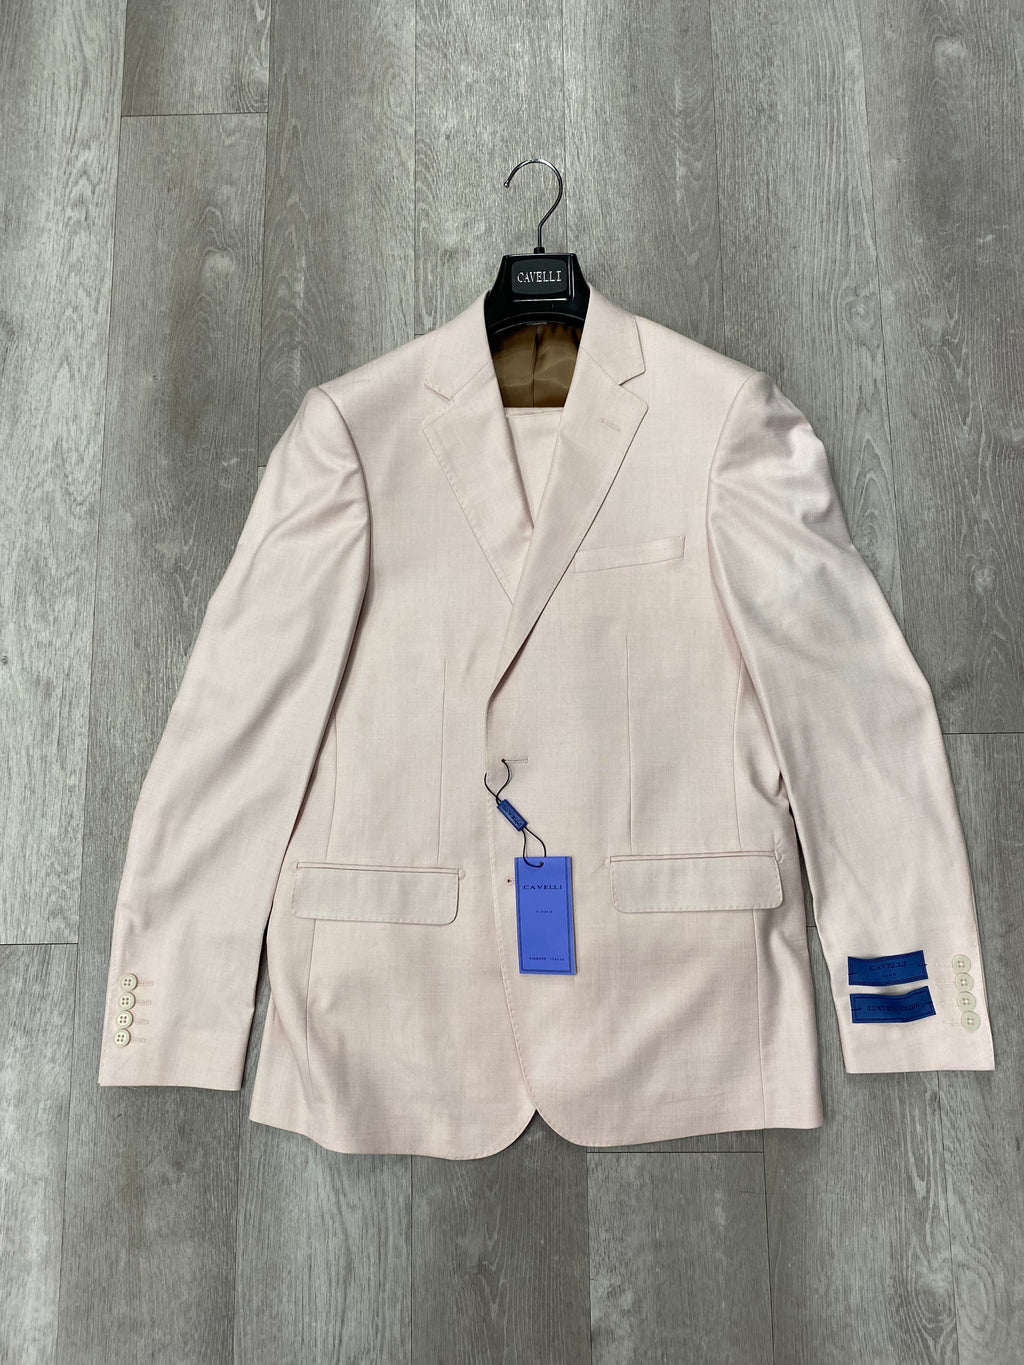 Cavelli Uomo Porto Slim Fit Suit 1986/20 Blush